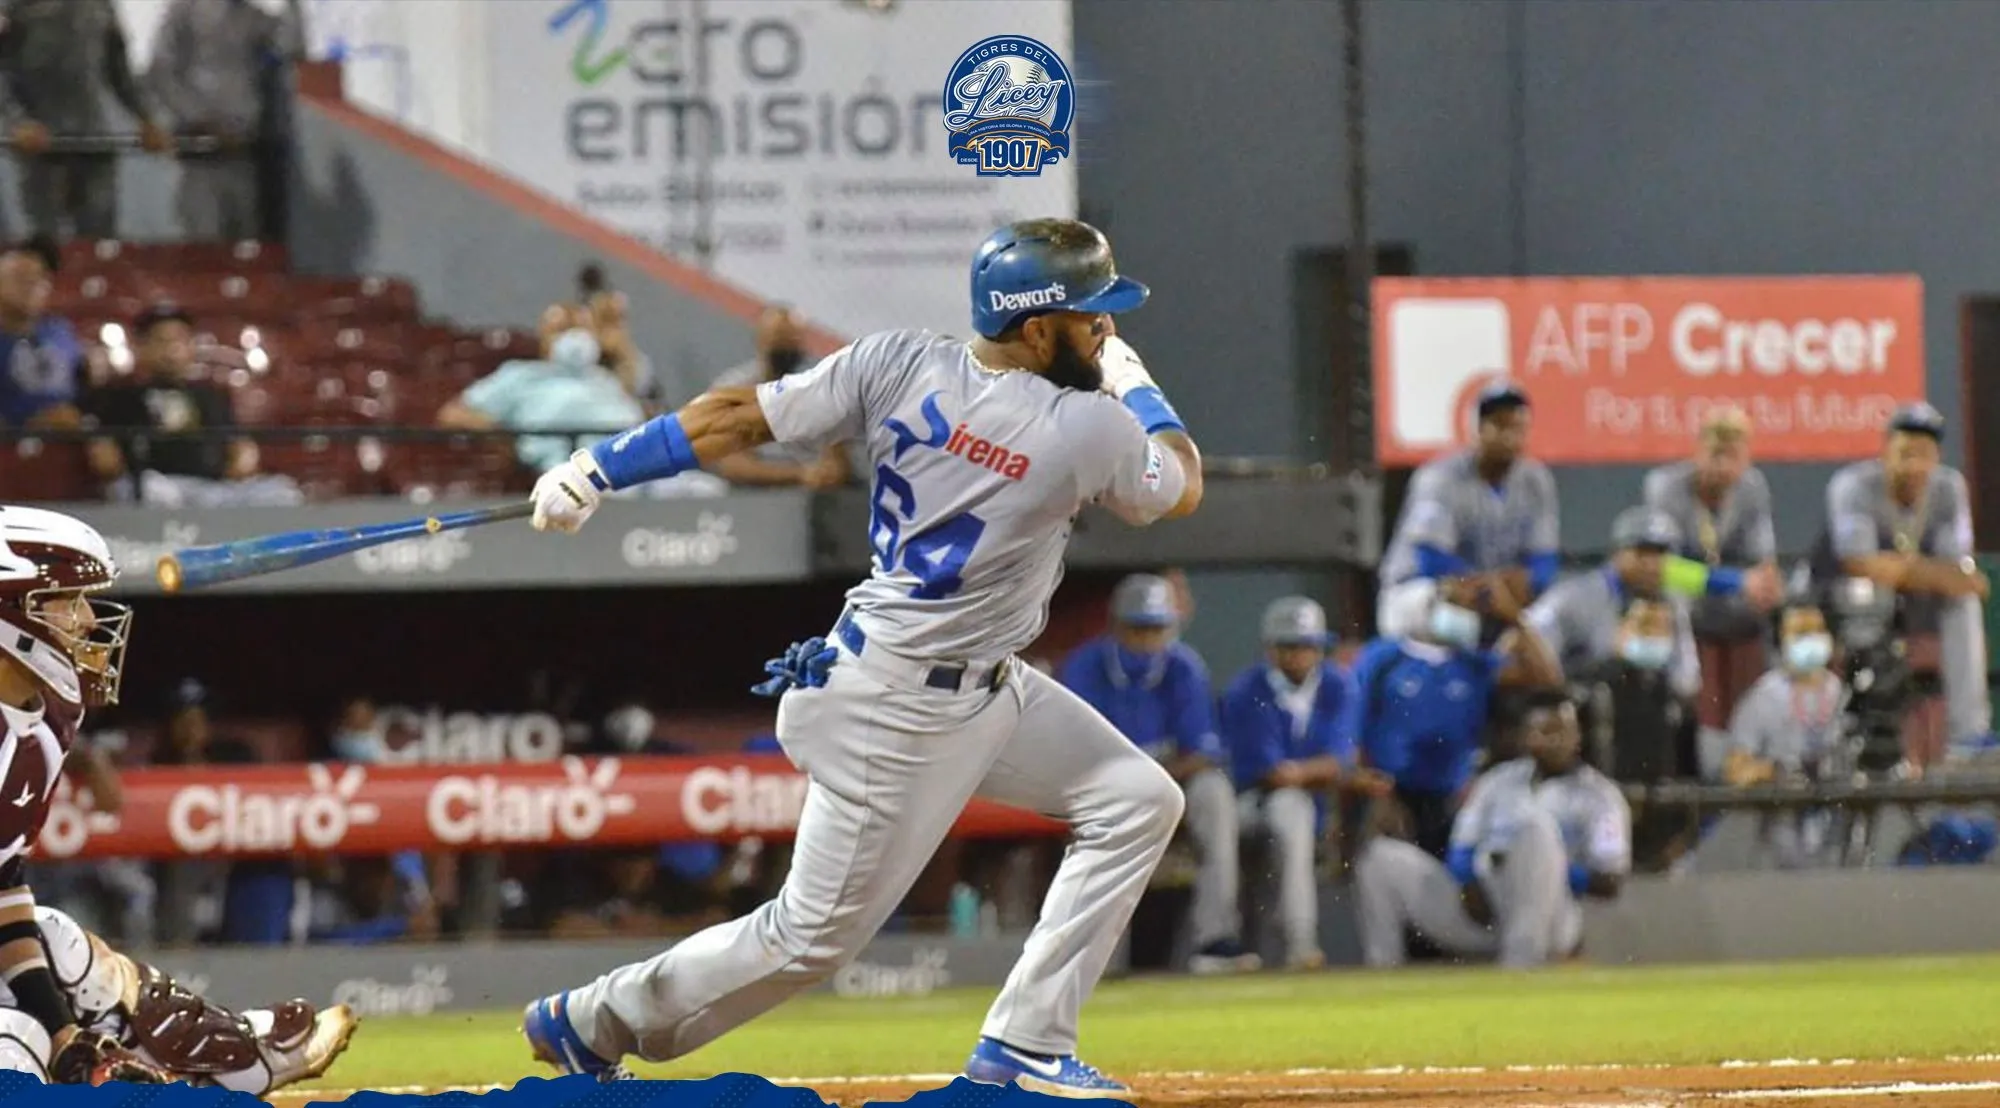 Gigantes, Estrellas, Tigres y Aguilas buscan la final del béisbol dominicano